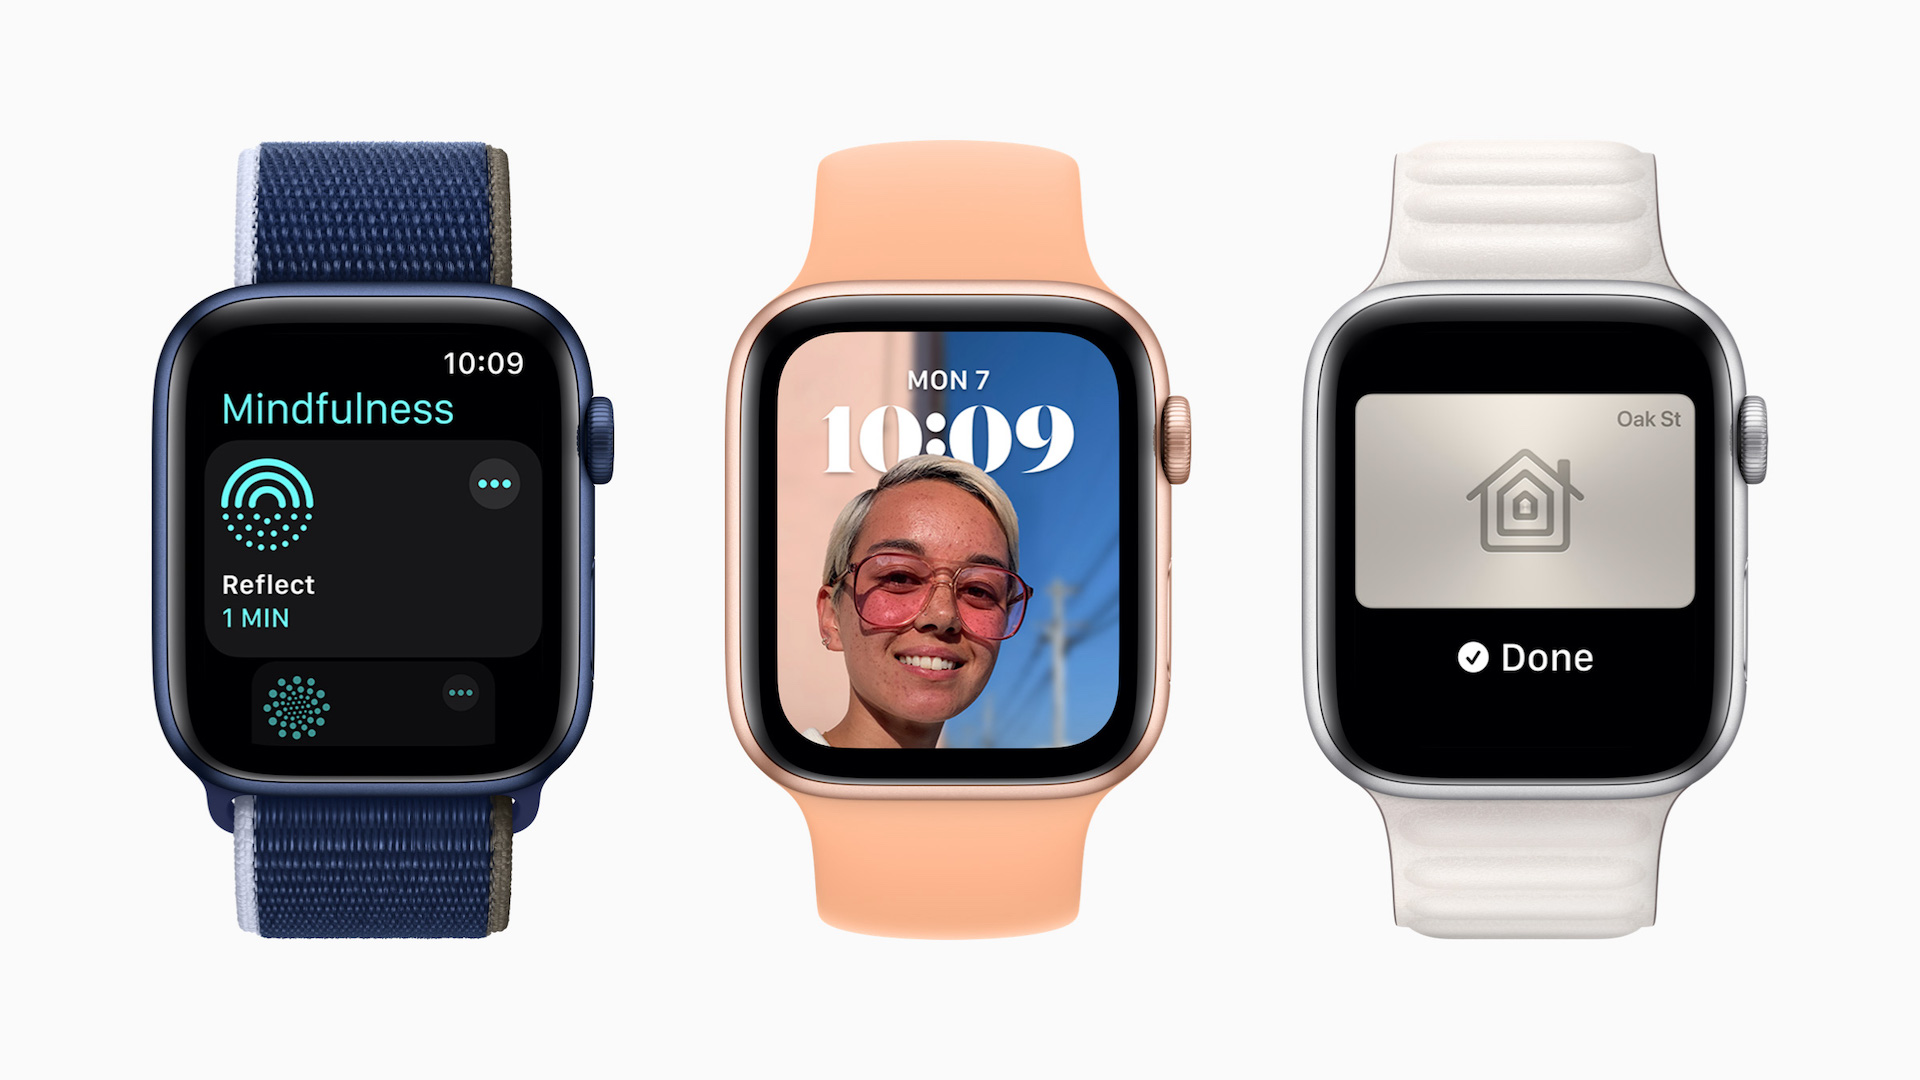 Flere funksjoner til Apple Watch med watchOS 8